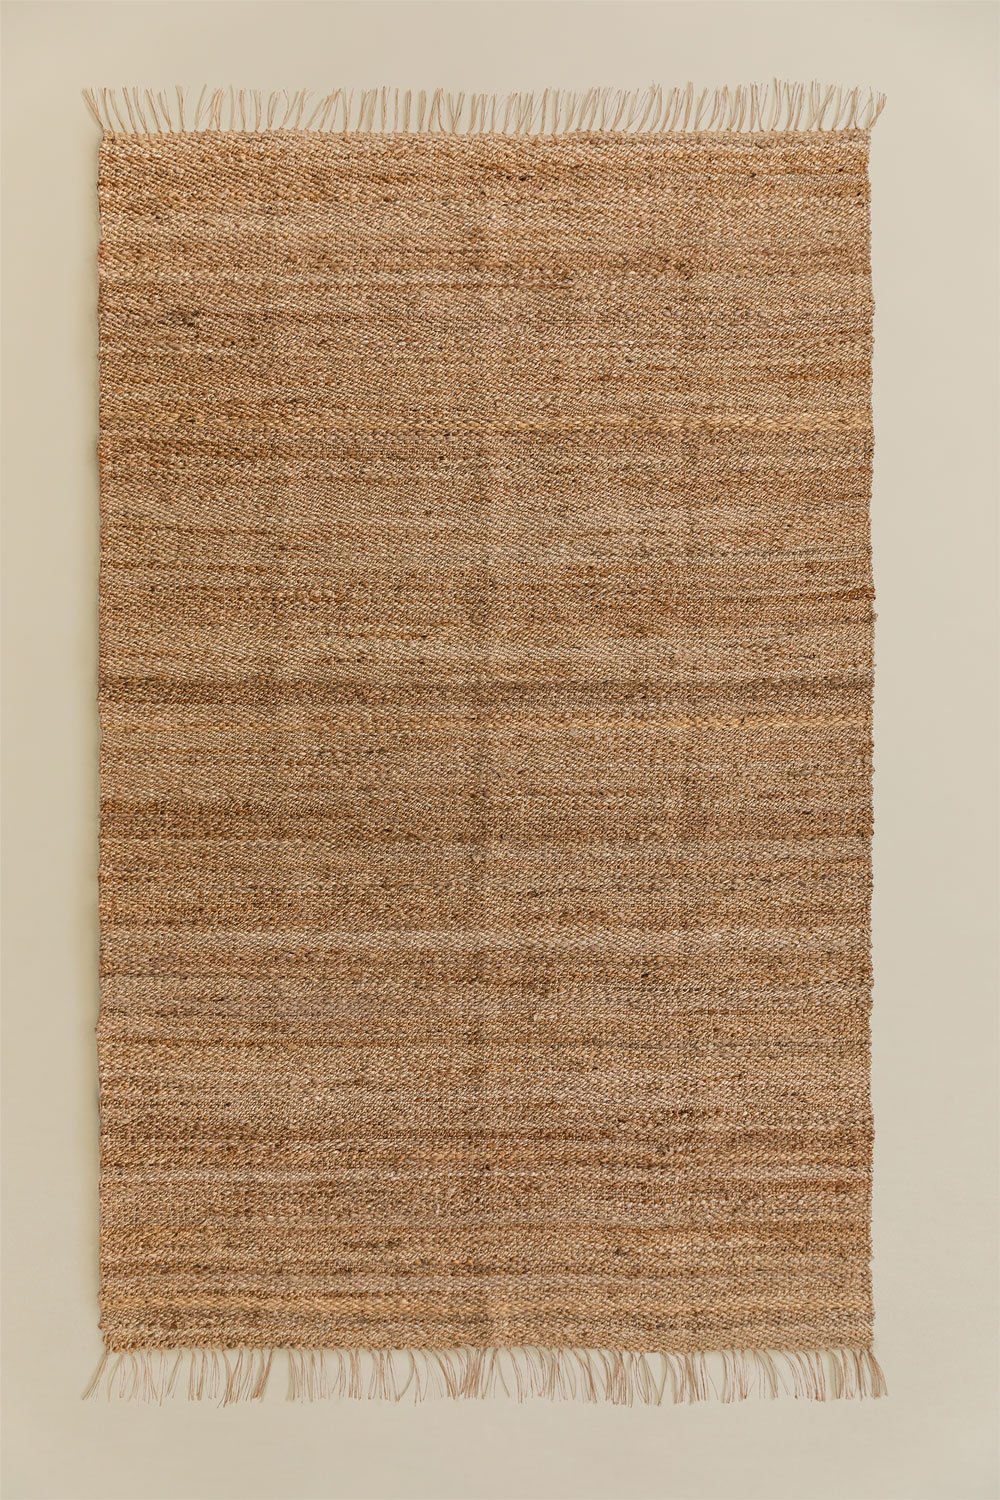 Tapis en Jute Naturel (275 x 155 cm) Magot, image de la galerie 1